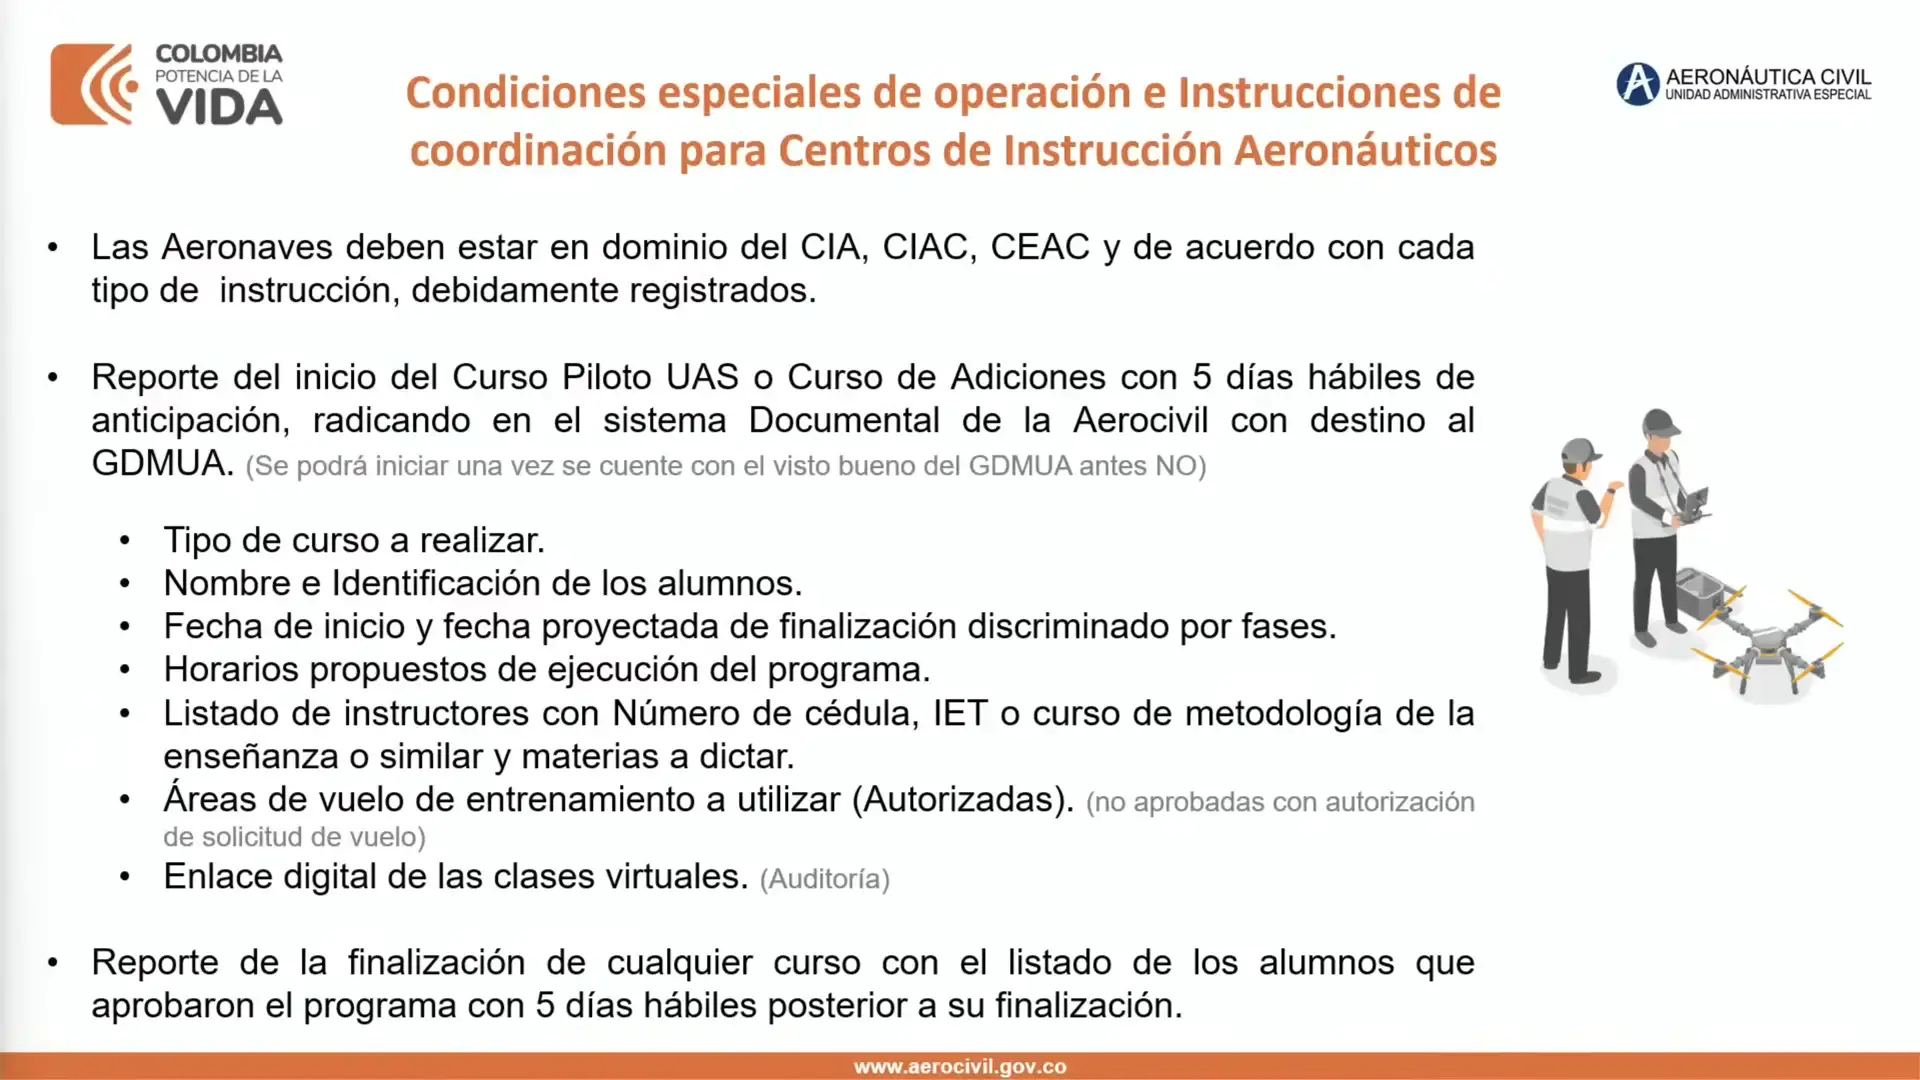 Condiciones especiales de operación e instrucciones de coordinación para Centros de Instrucción RAC 100 - Pag 2